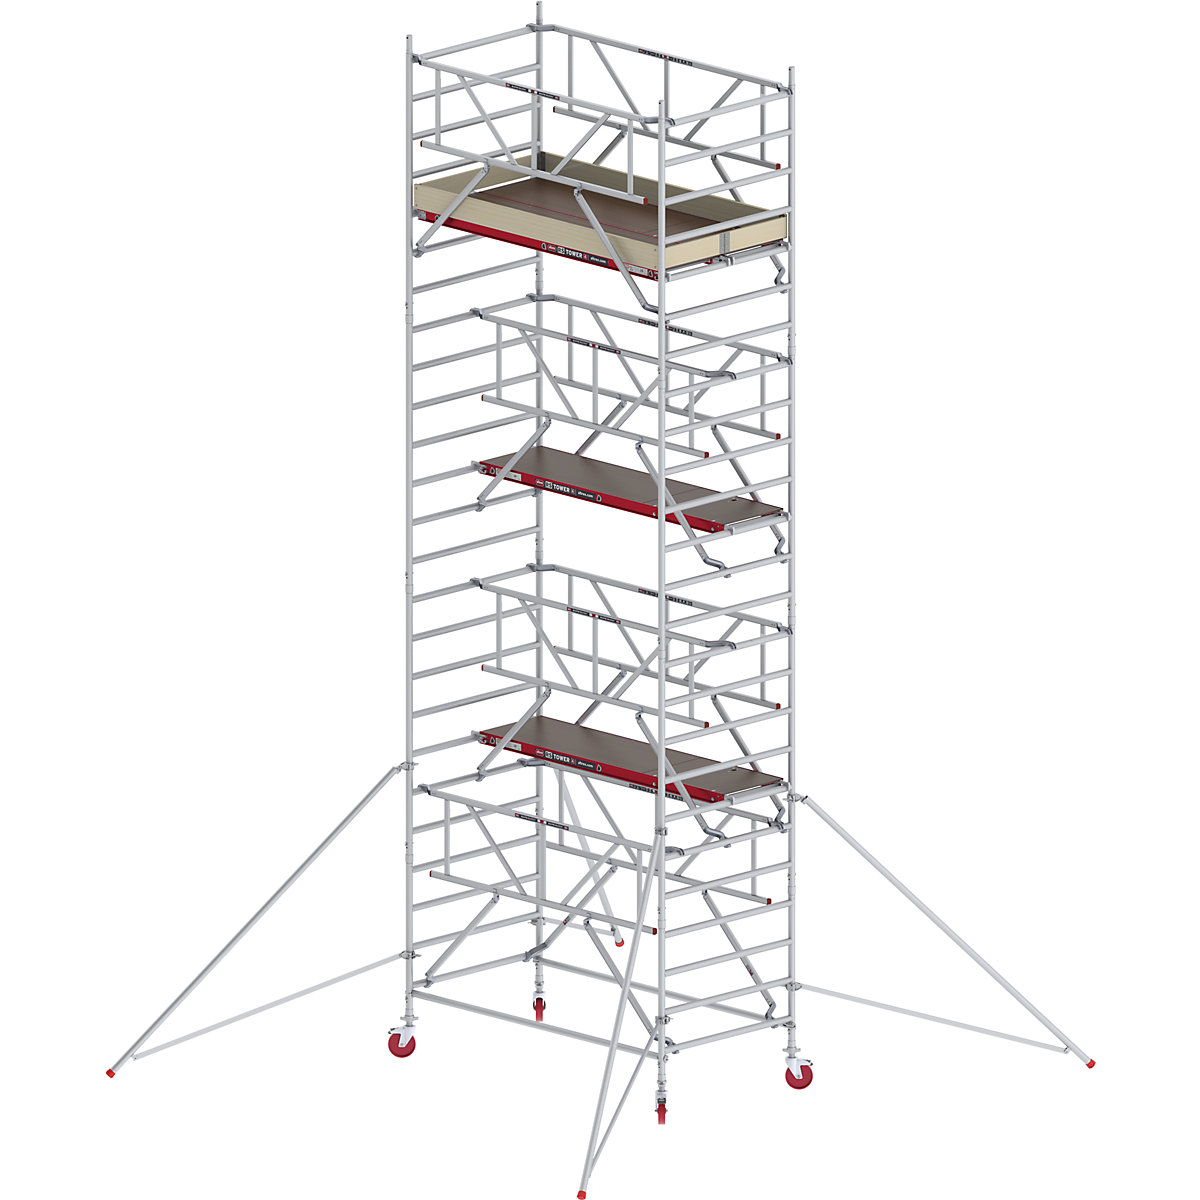 Schelă mobilă RS TOWER 42 lată cu Safe-Quick® – Altrex, platformă din lemn, lungime 2,45 m, înălțime de lucru 8,20 m-3